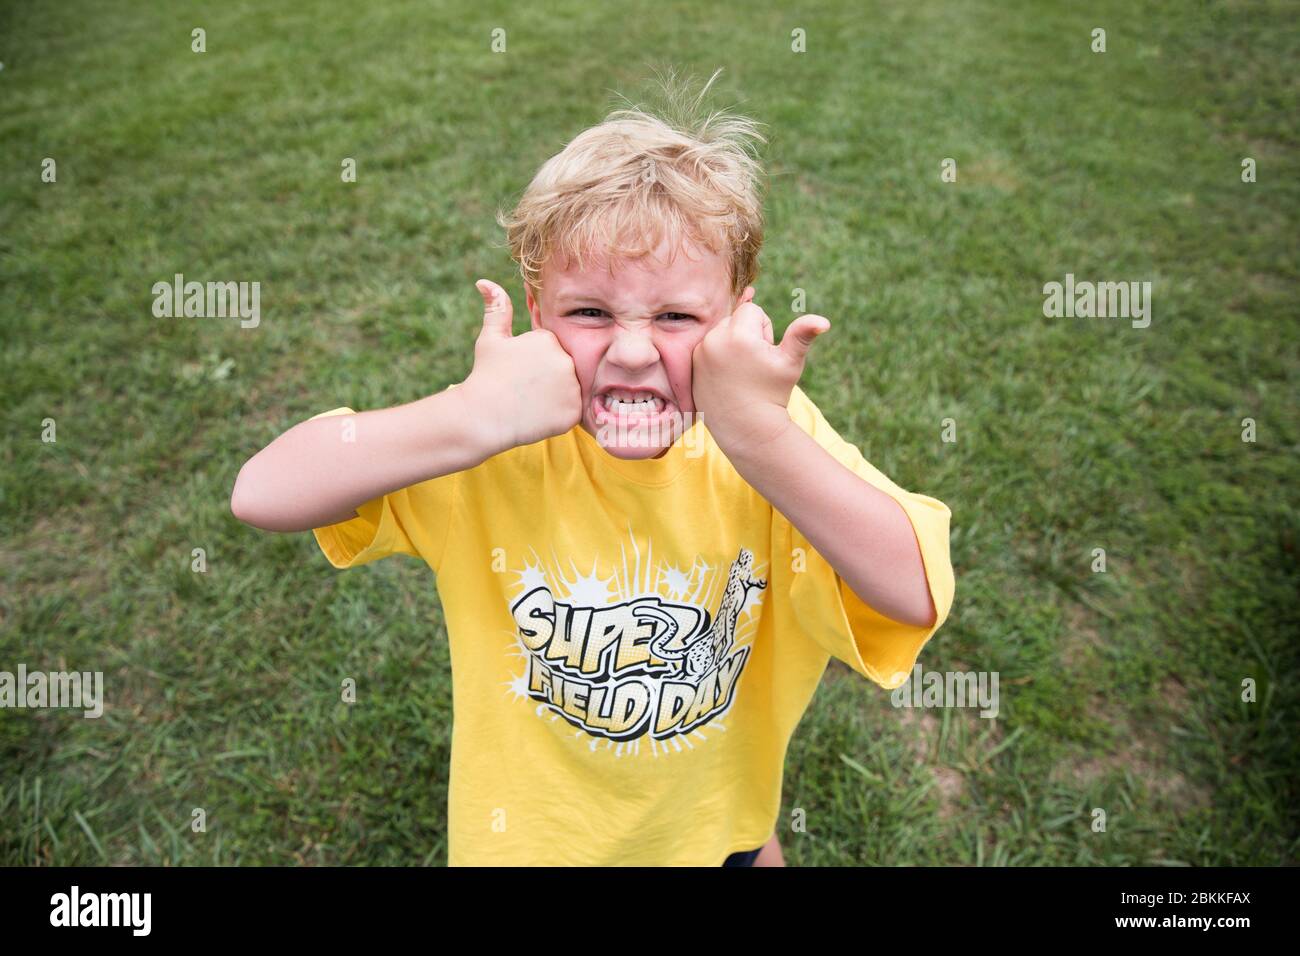 Silly Blonde Boy schizza la faccia con due pollice alla scuola Field Day Foto Stock